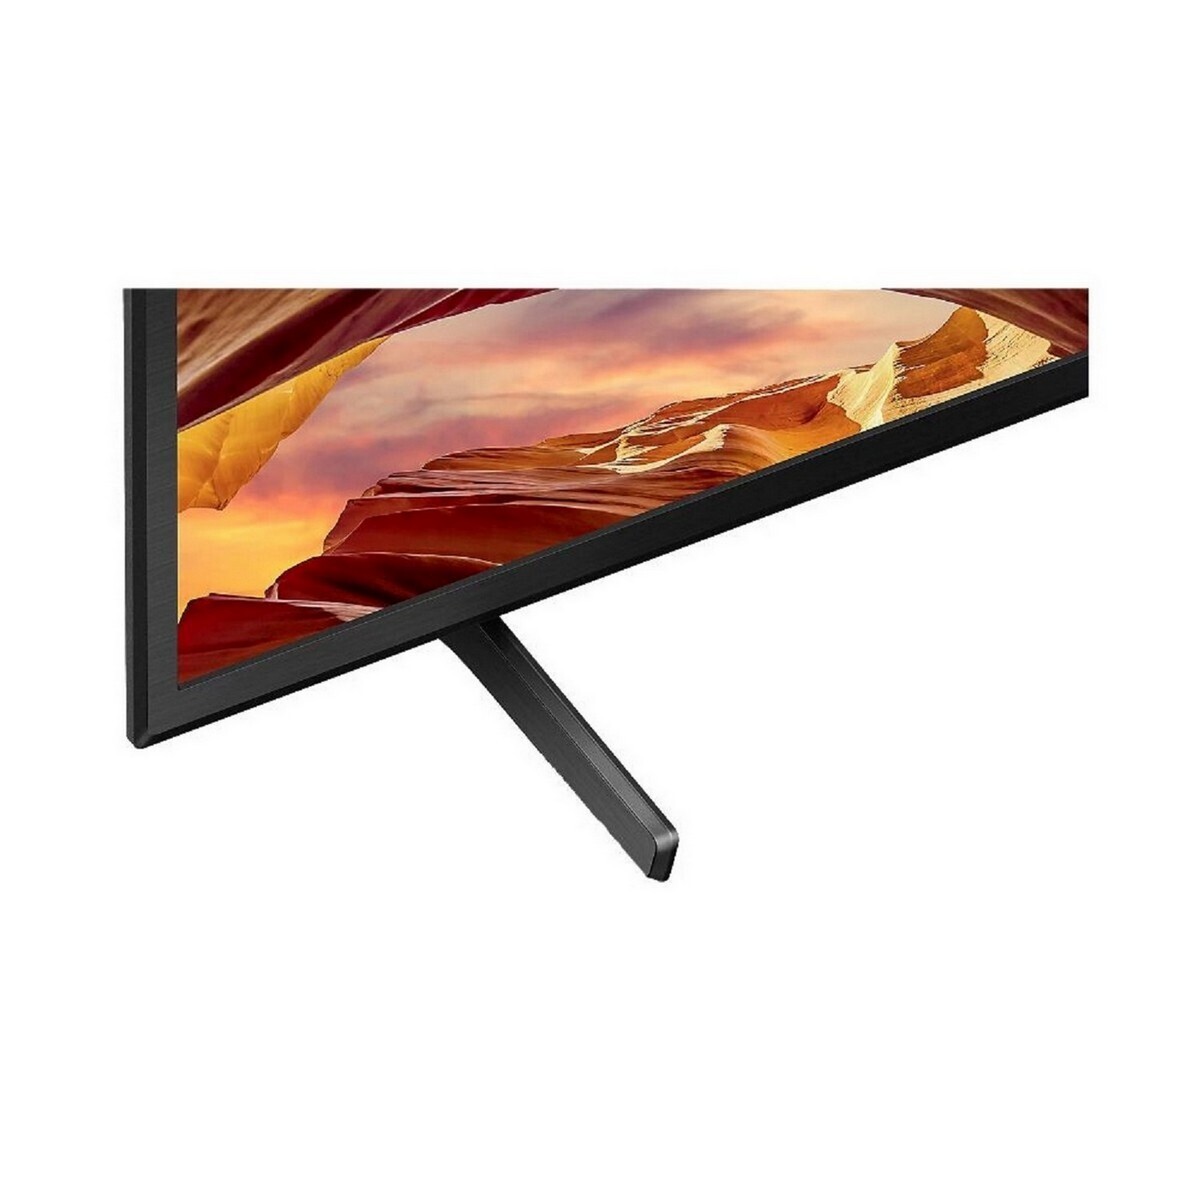 Sony4K Ultra HD Android Smart Google TV KD-50X70L 50"